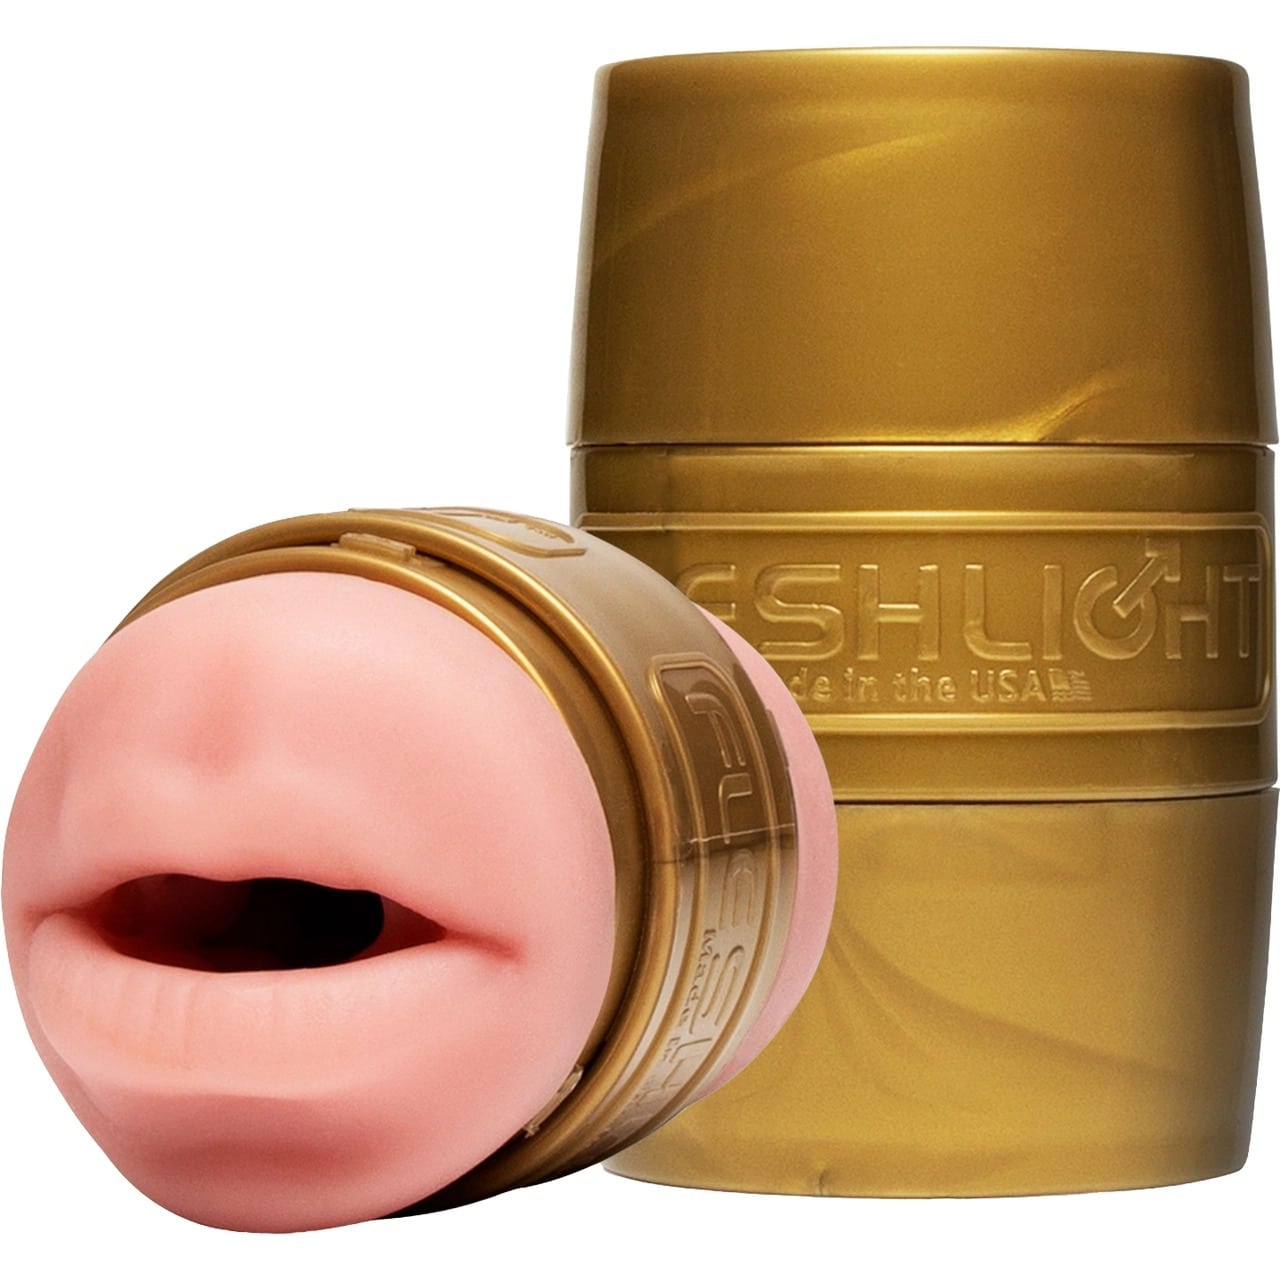 Compare Fleshlight Quickshot STU - Mouth/Butt